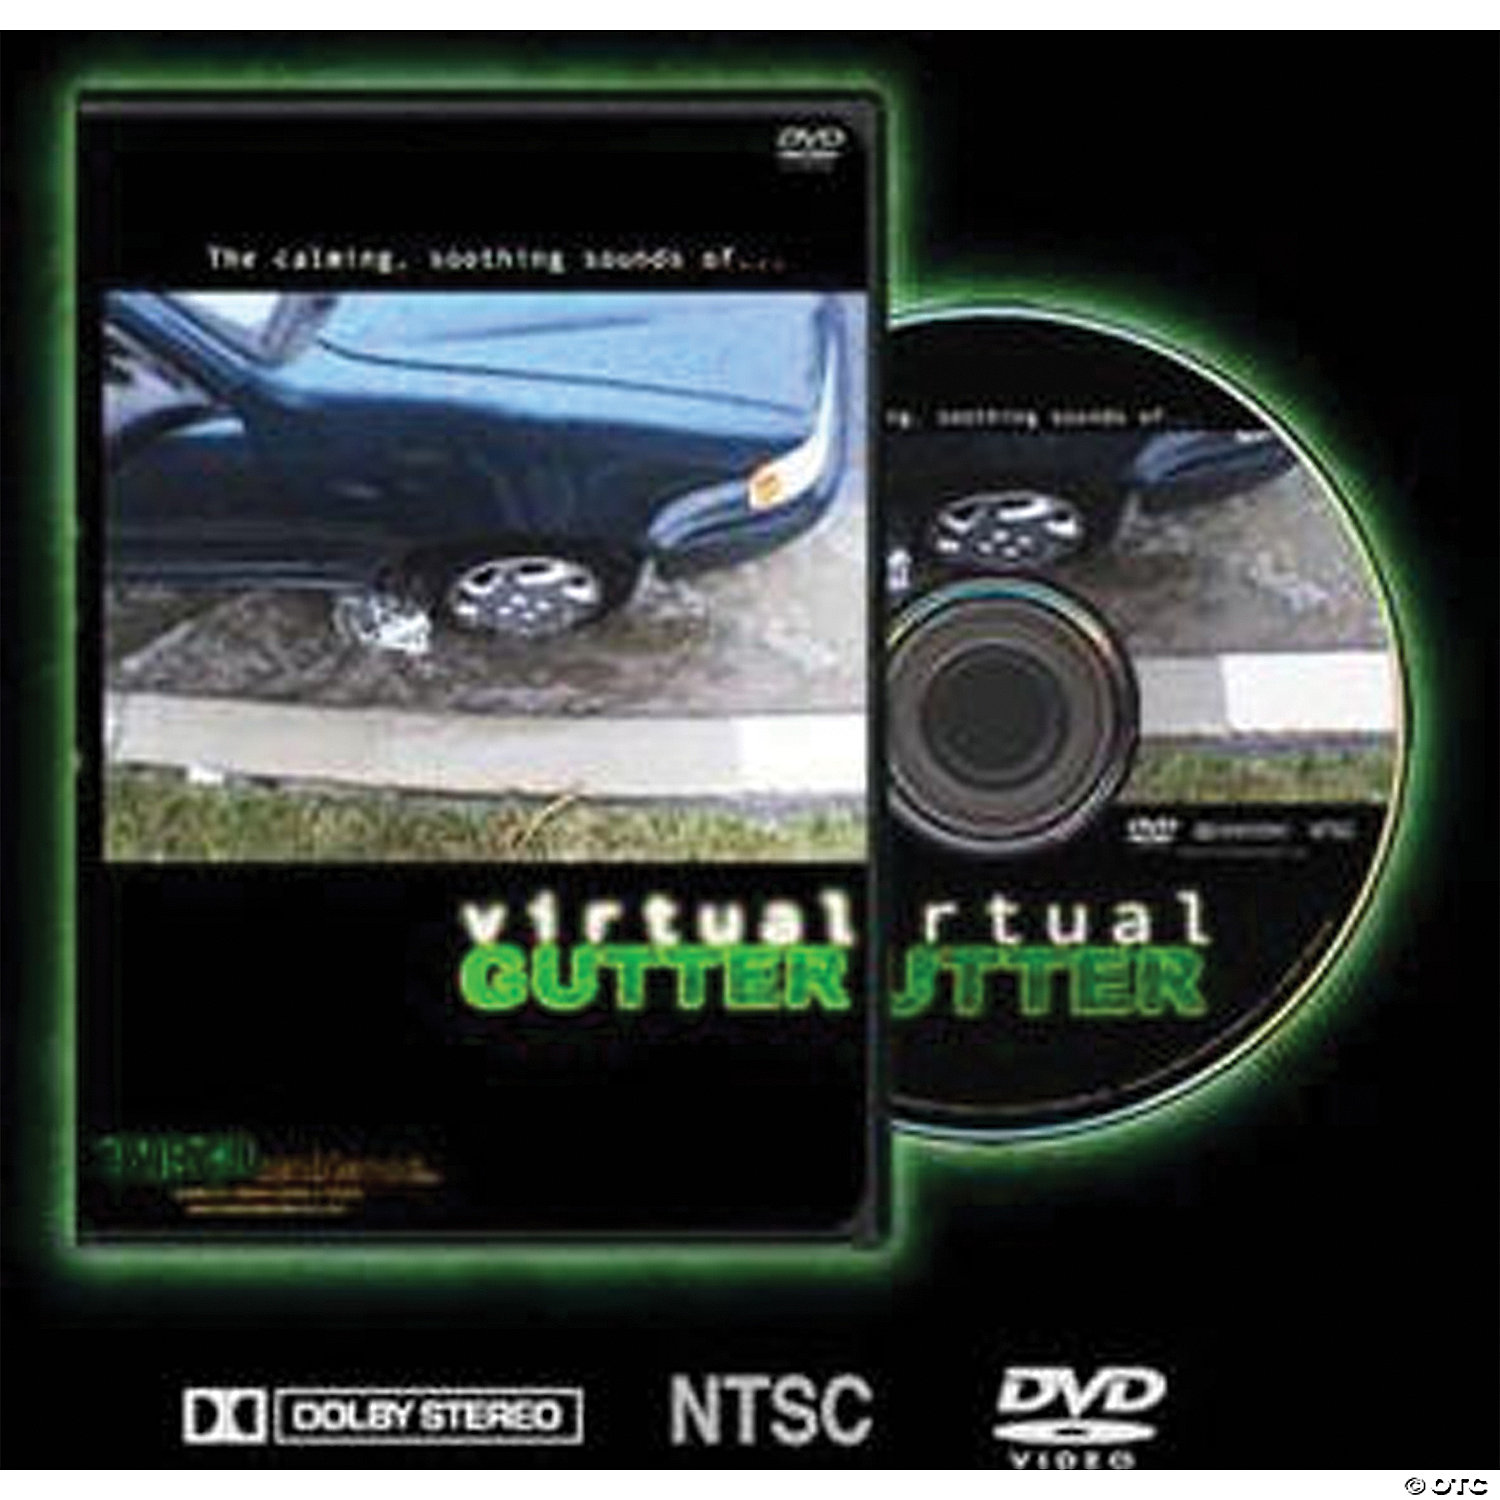 VIRTUAL GUTTER ON DVD - HALLOWEEN